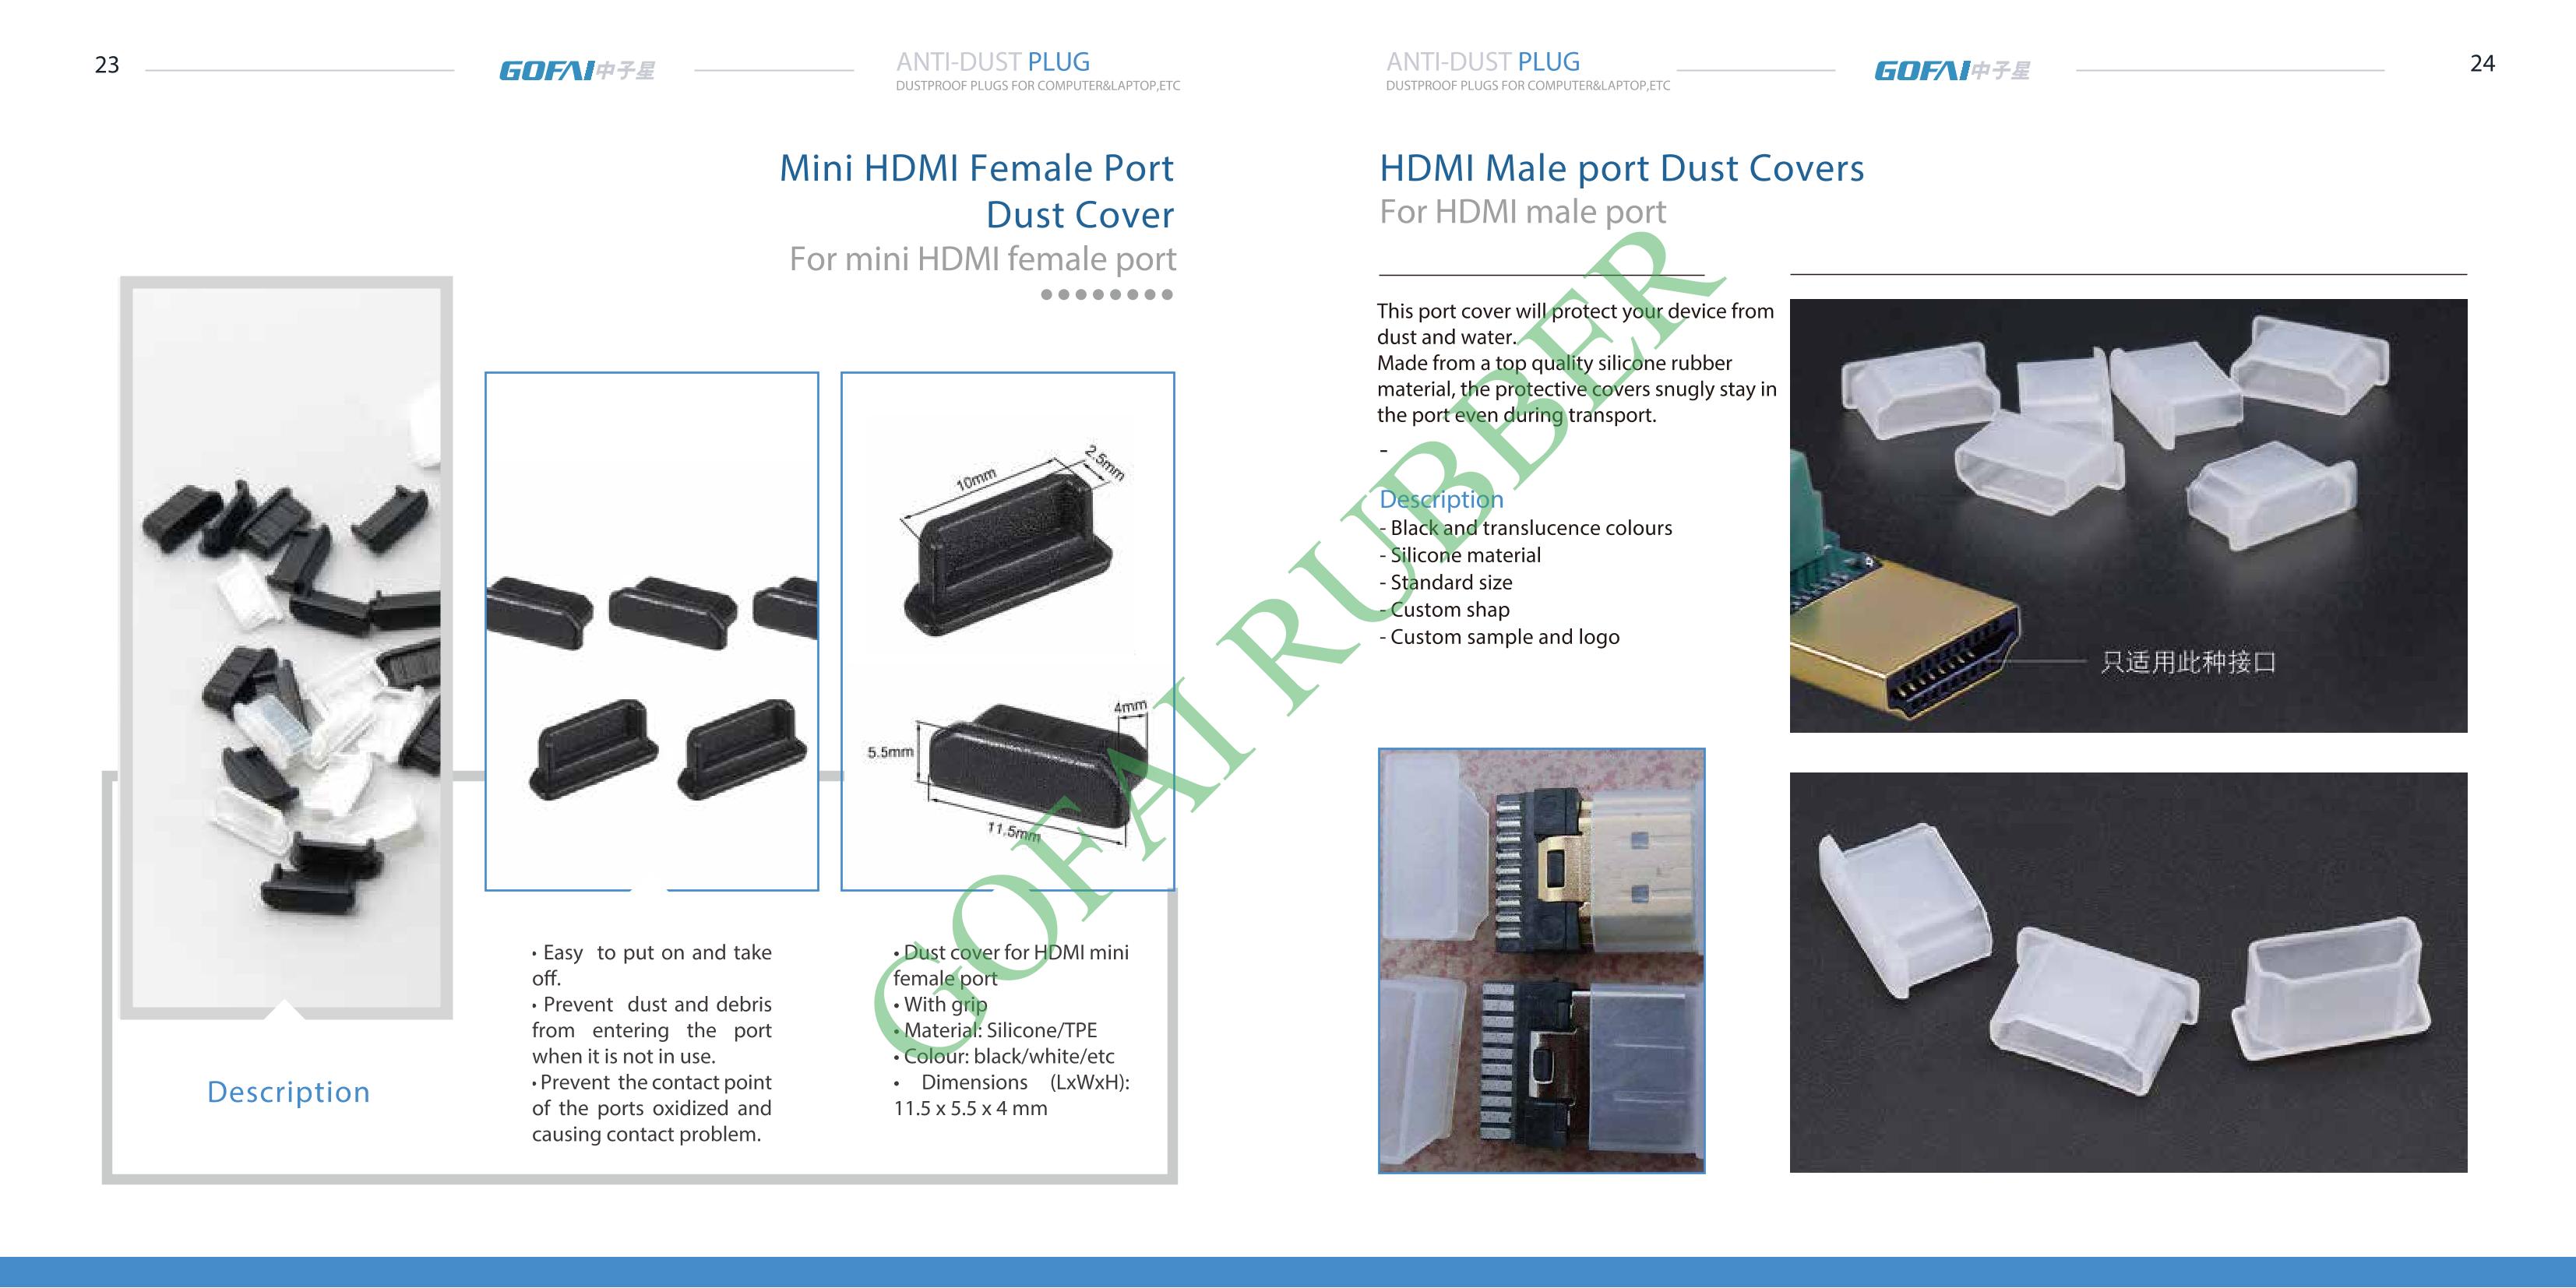 USB Dust Cover cataloge_16.jpg